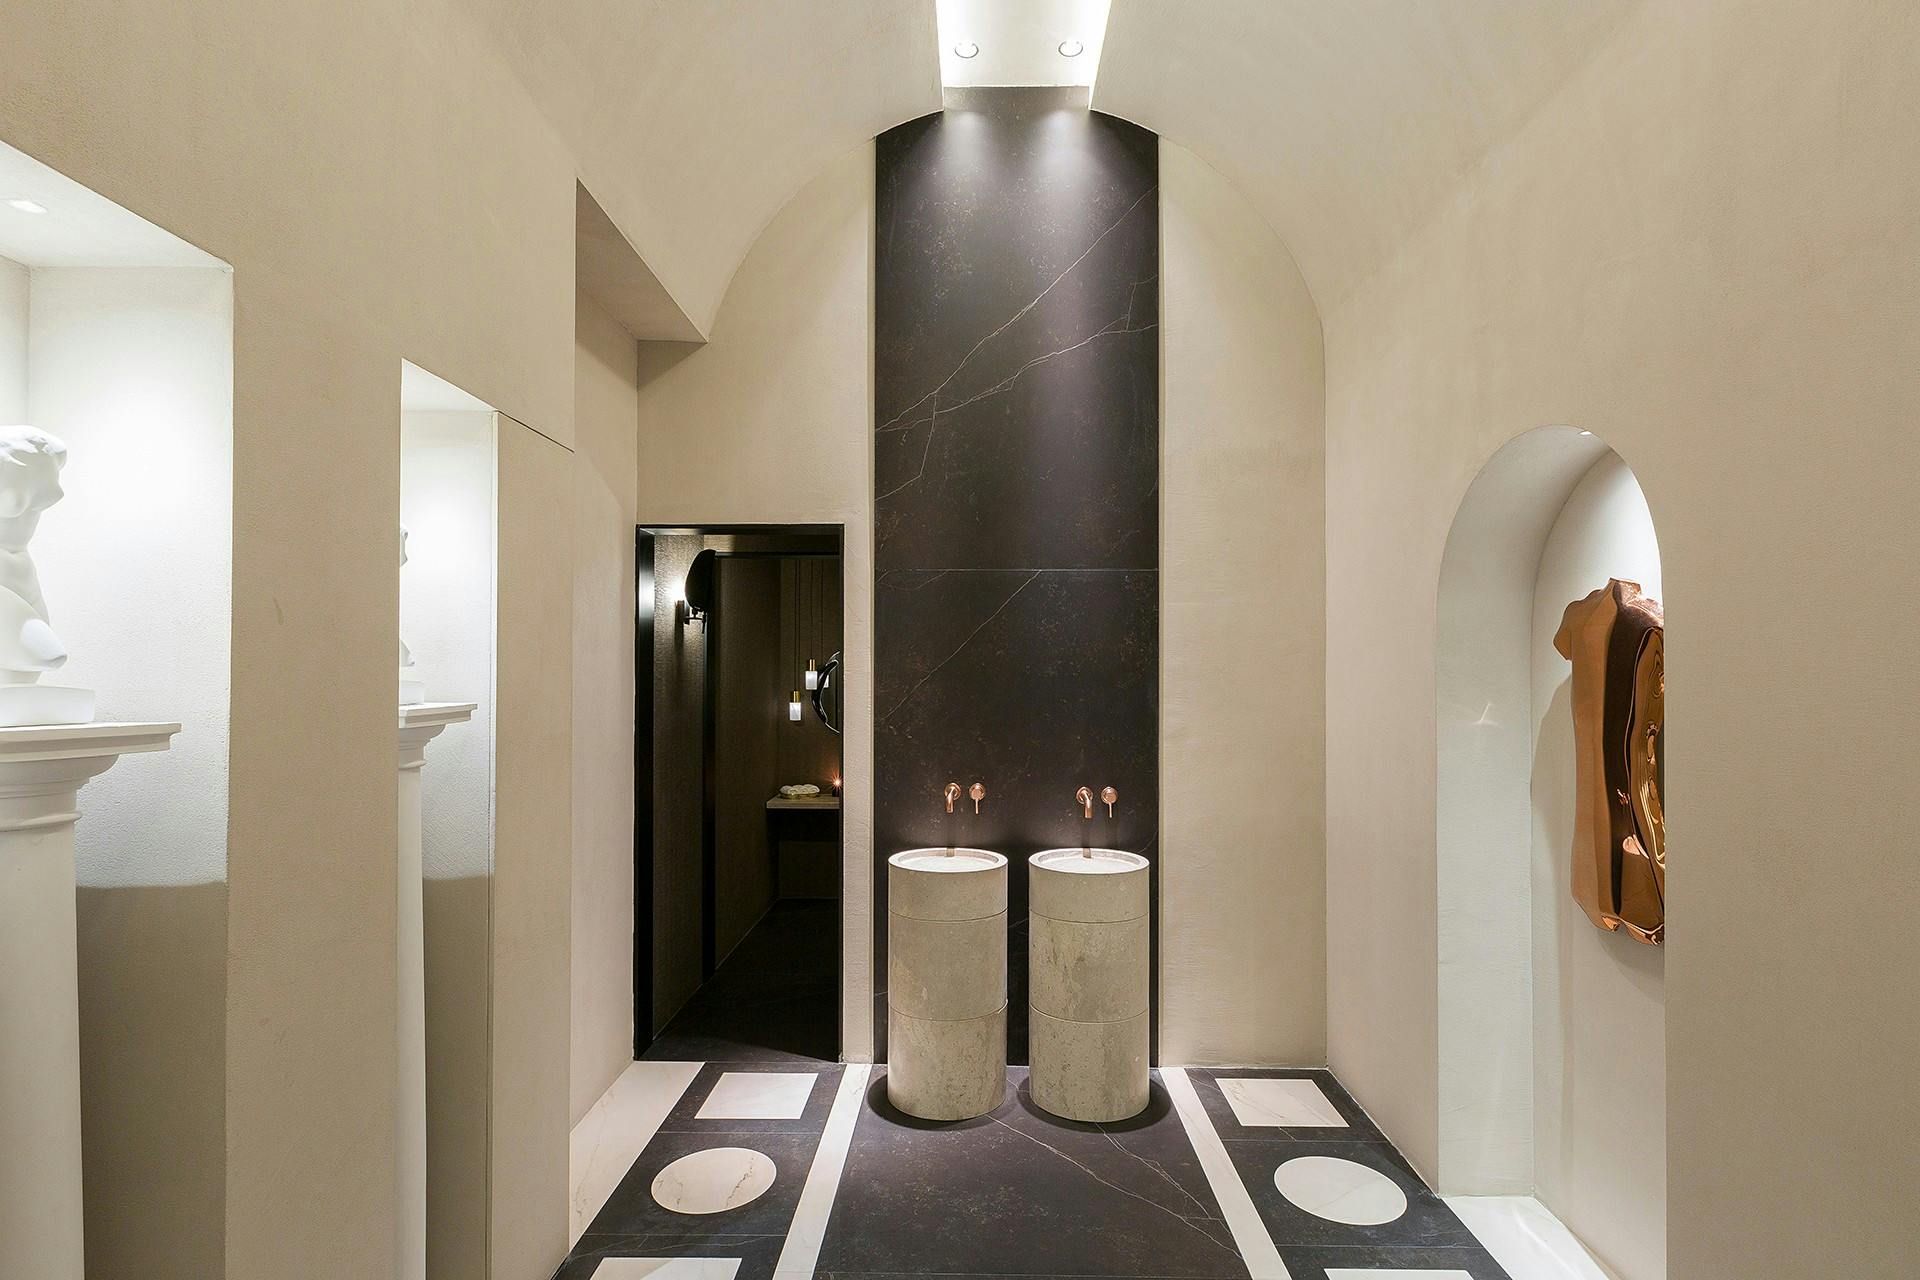 Imagen número 79 de Un baño público contemporáneo inspirado en las termas romanas